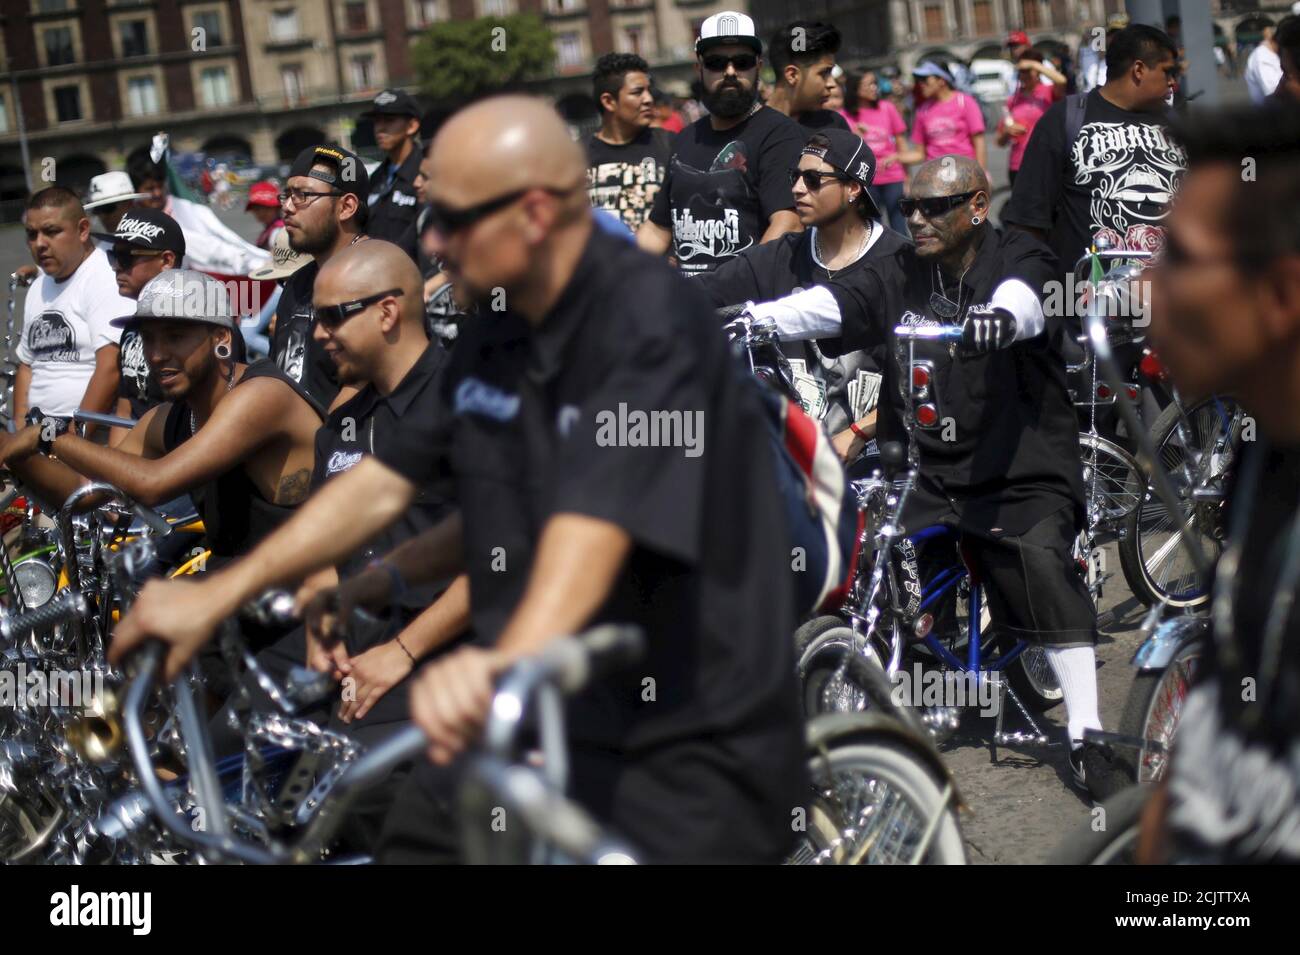 Los ciclistas se reúnen para formar una forma de bicicleta con el objetivo de promover el ciclismo como modo de transporte y conmemorar el día de la bicicleta, que se celebra anualmente el 19 de abril, en la plaza Zócalo en la Ciudad de México, México, el 10 de abril de 2016. REUTERS/Edgard Garrido Foto de stock